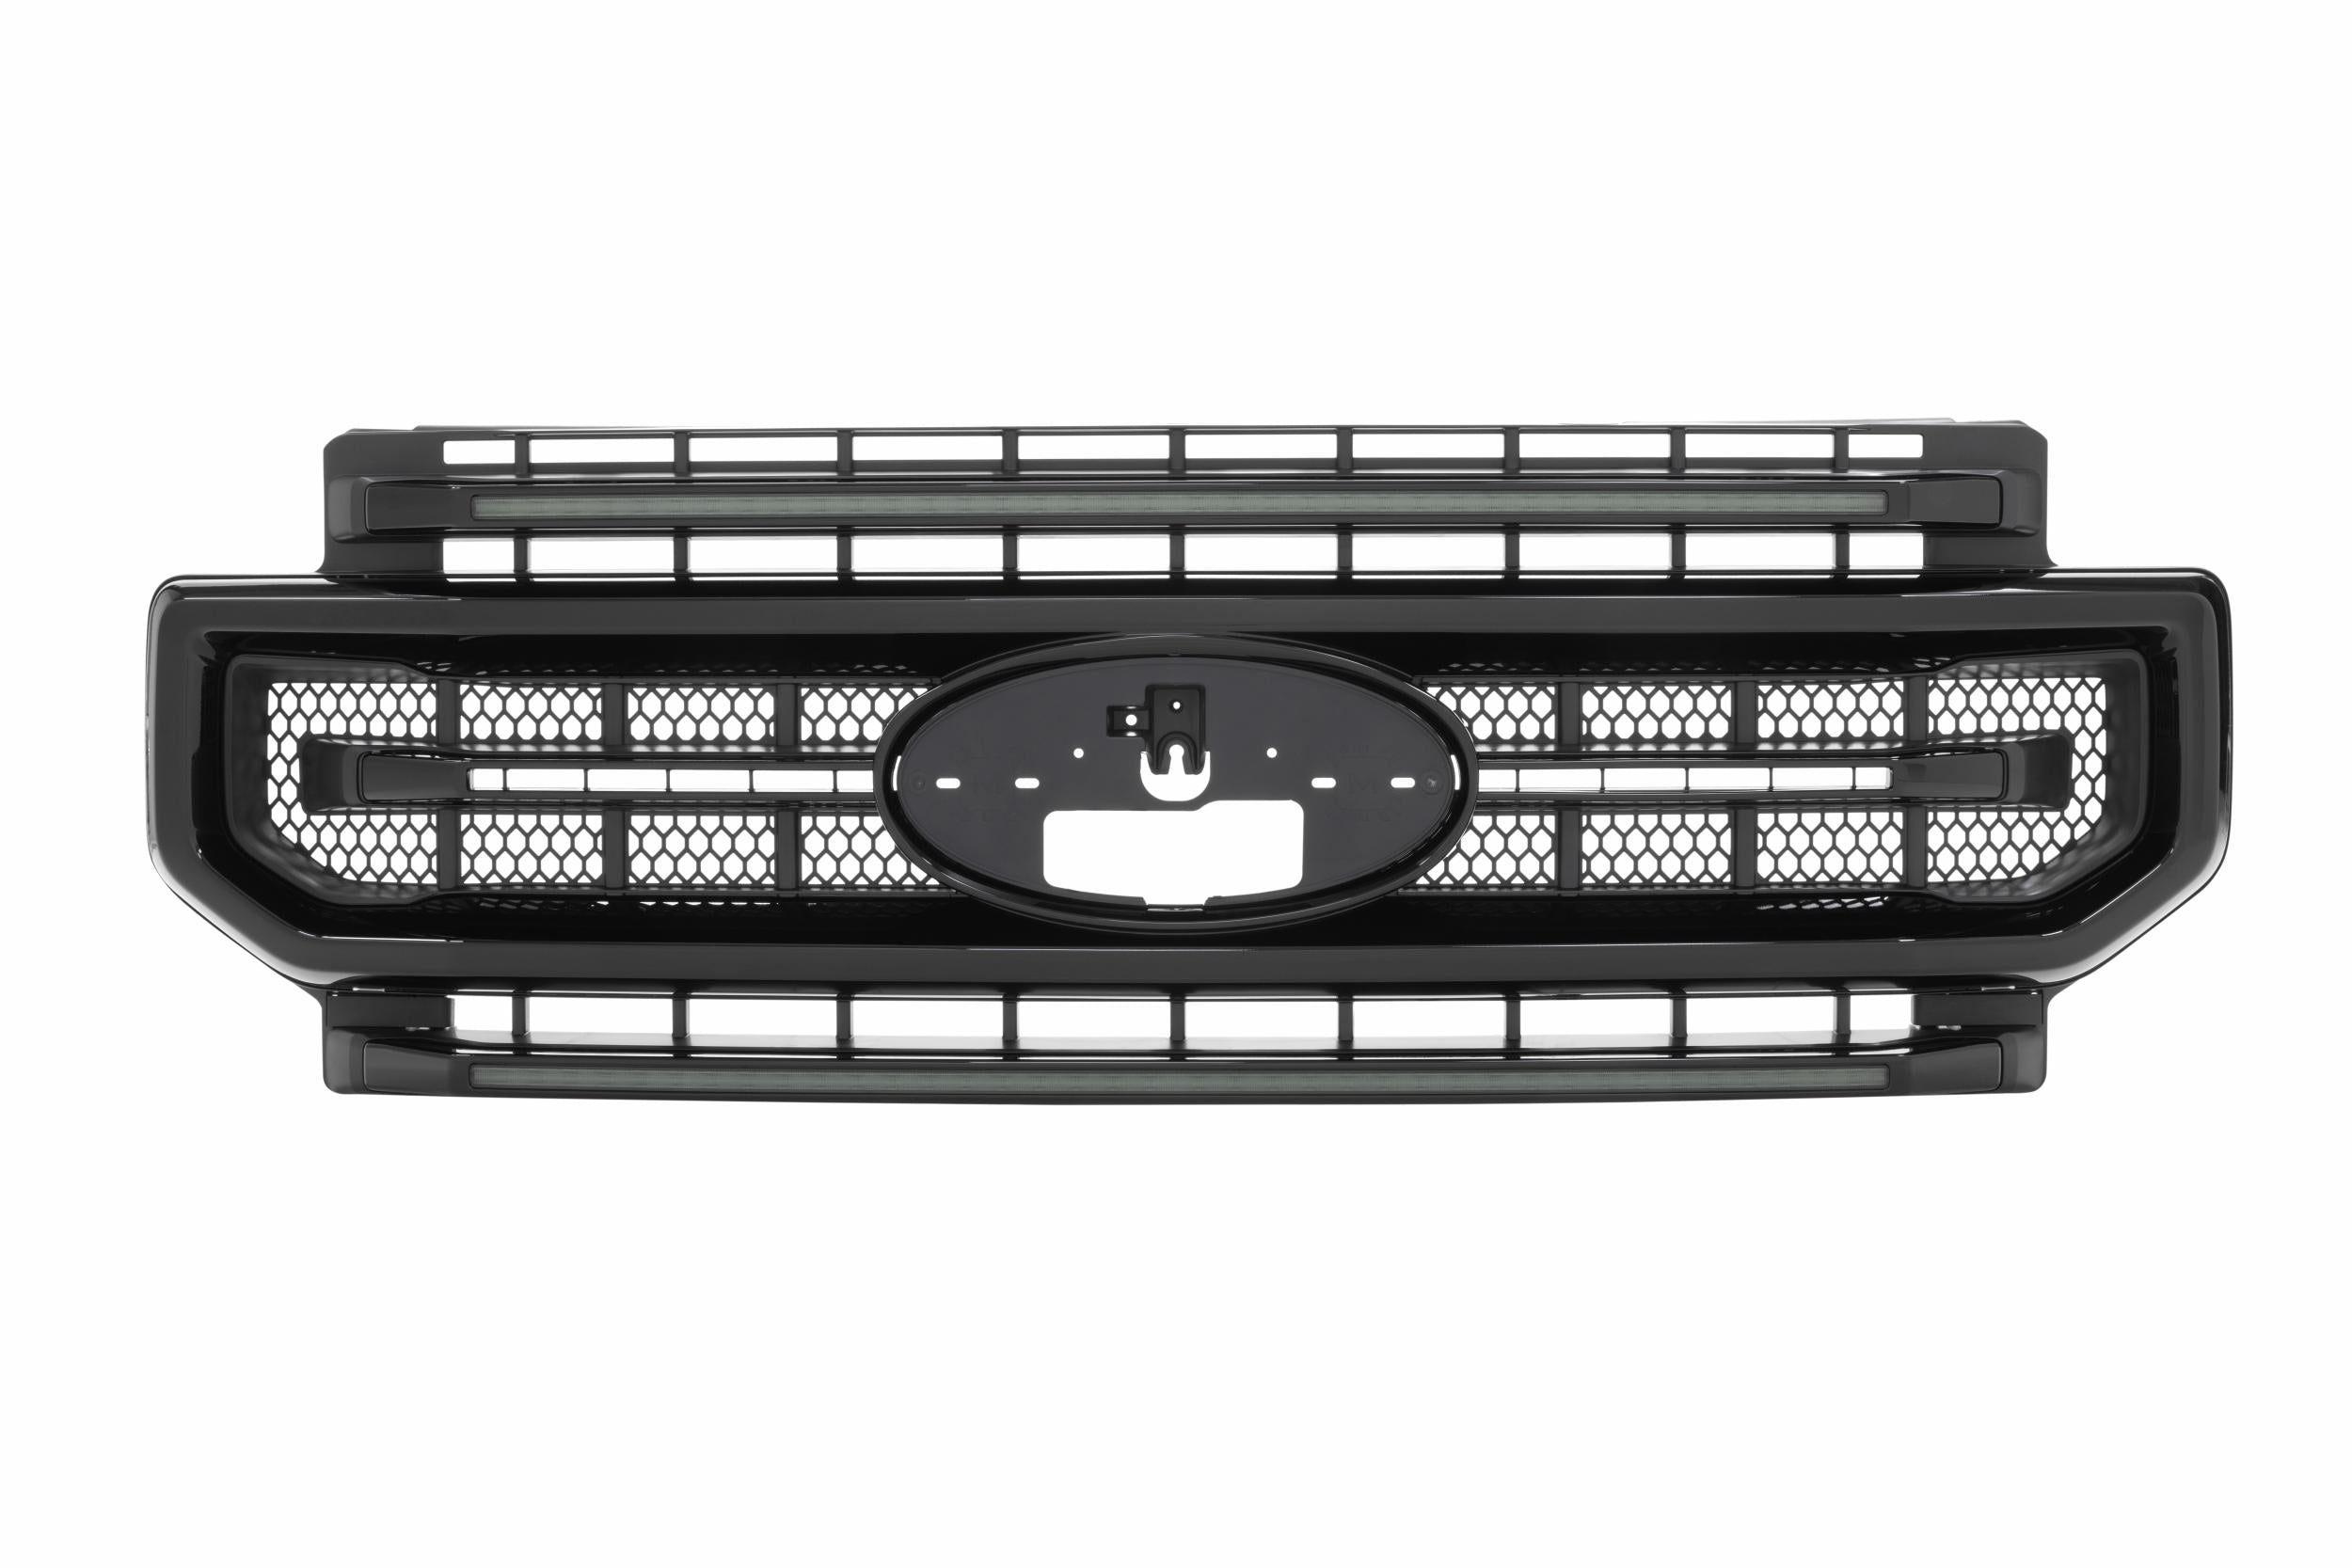 Morimoto XBG LED Grille: Ford Super Duty (20-22) (Paintable-Black / White DRL)-XBG10